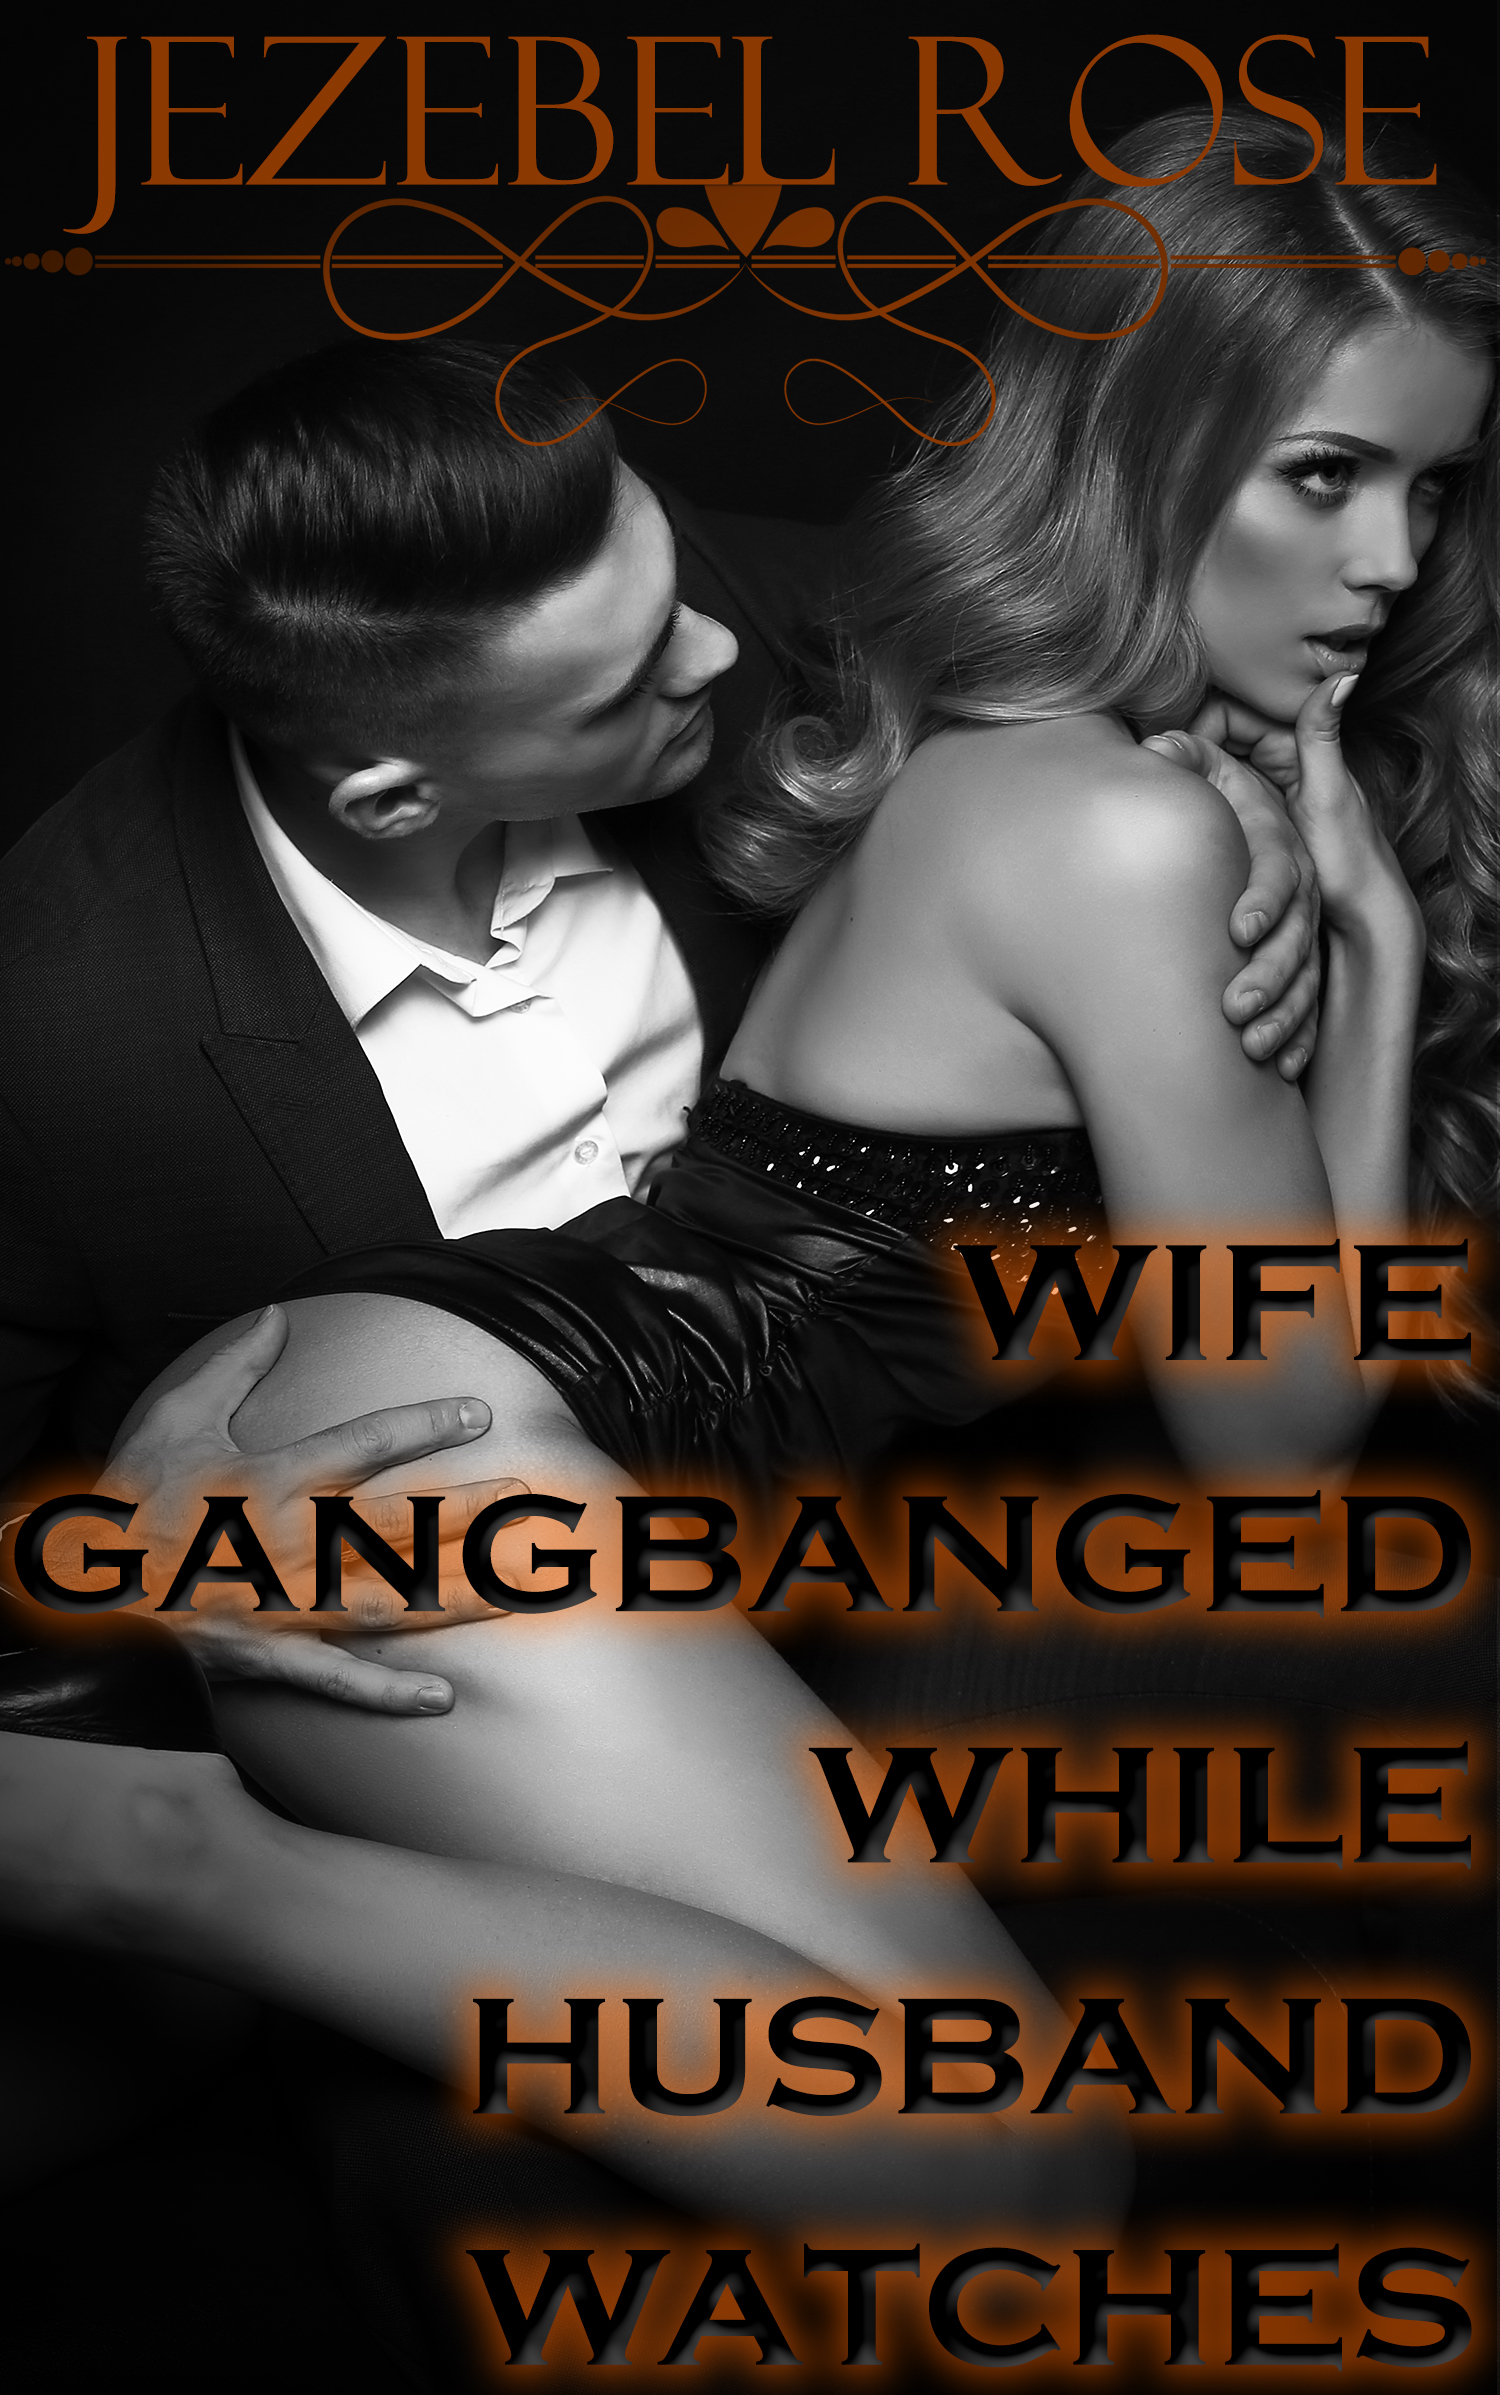 wife gang bang husband watch